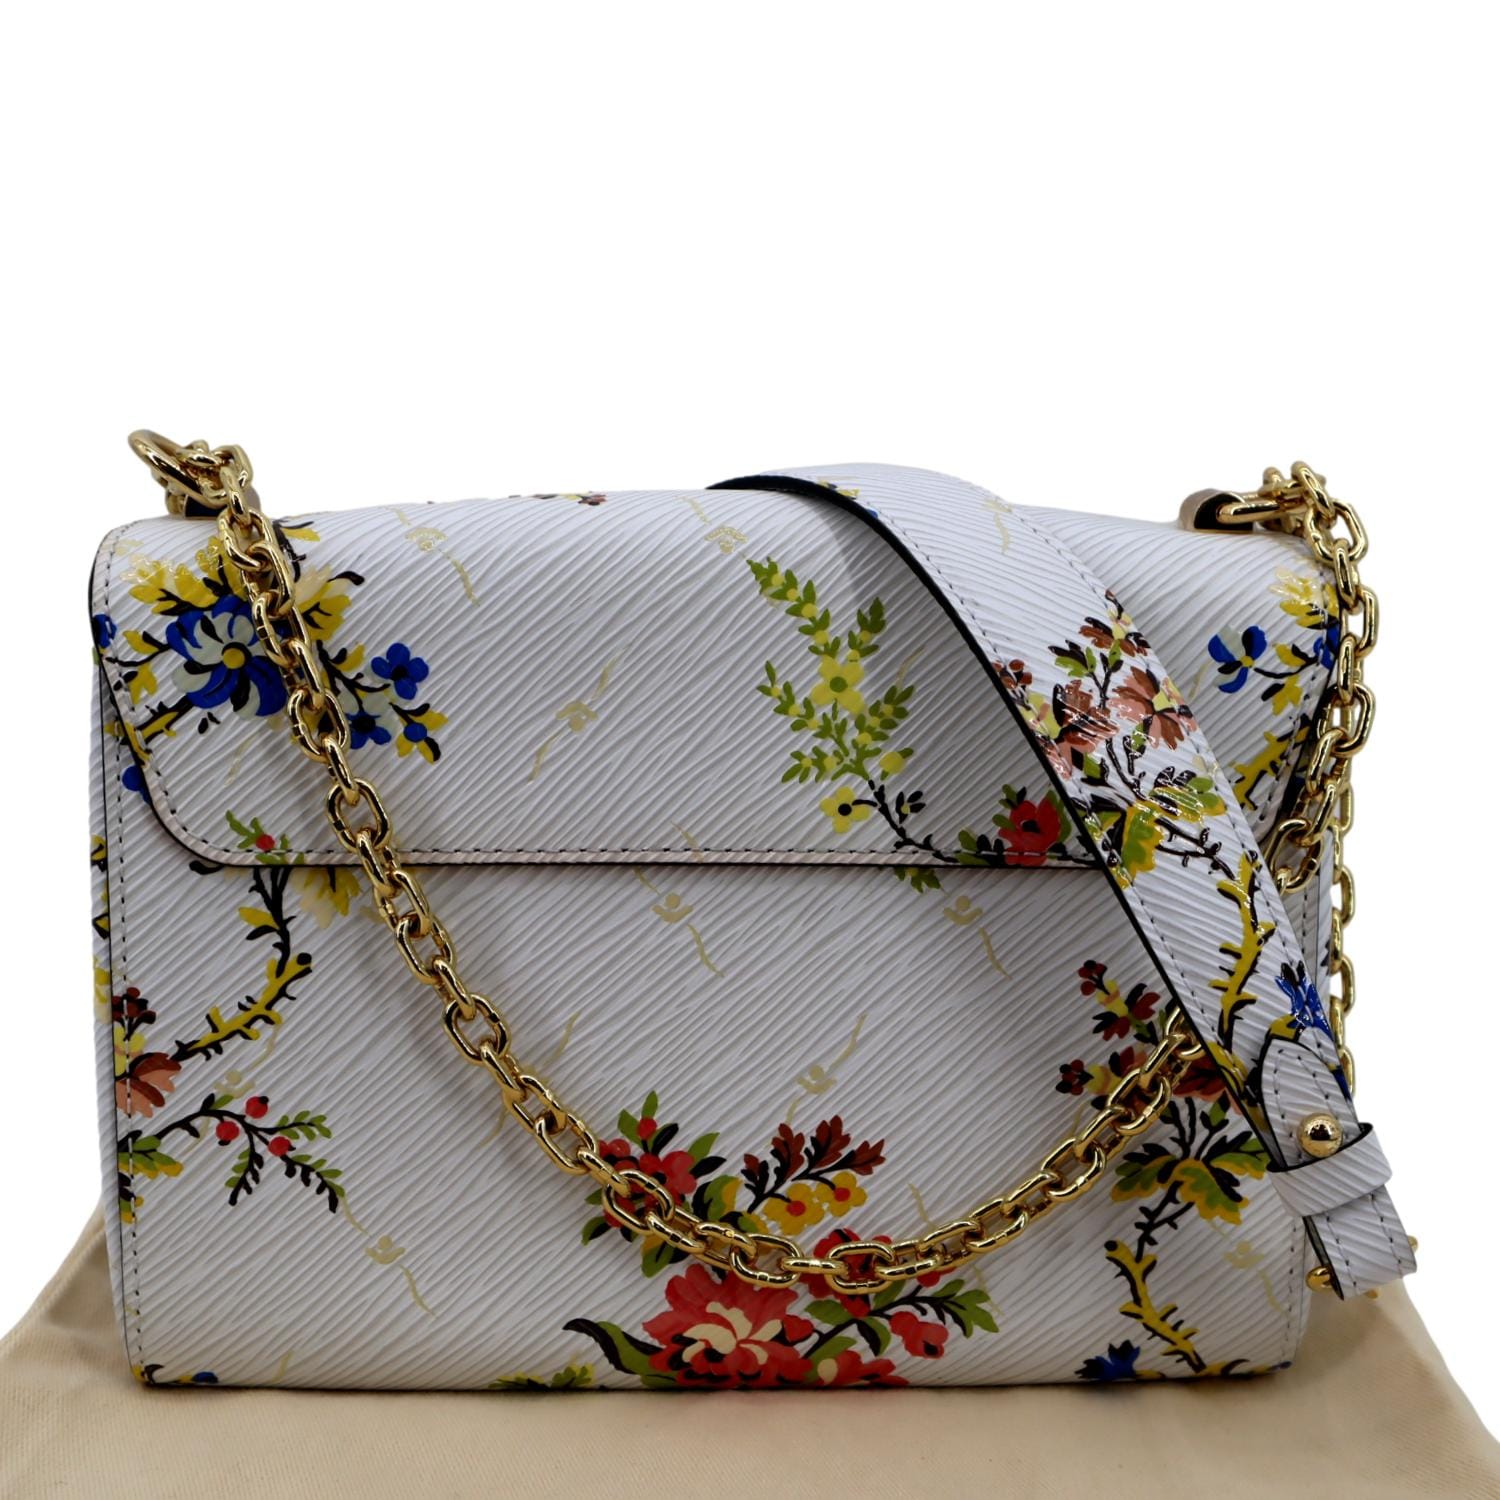 LOUIS VUITTON Twist Floral Print Epi Leather Crossbody Bag Multicolor